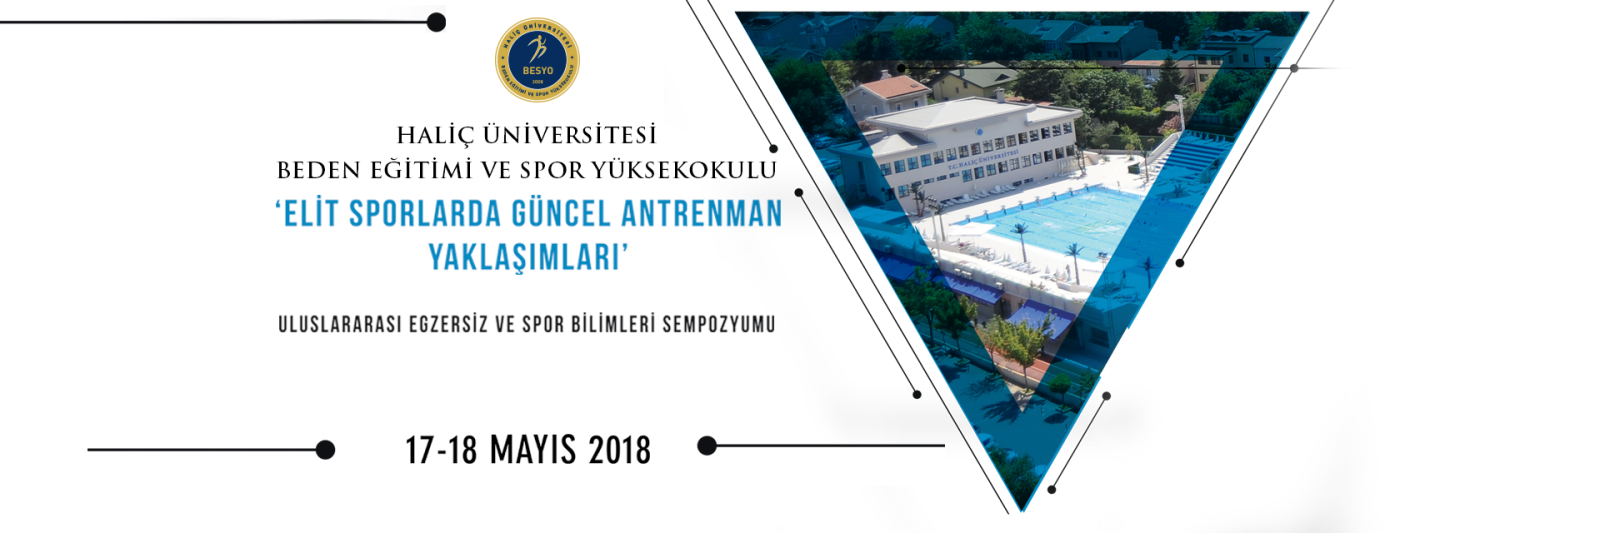 Haliç Üniversitesi'nden uluslararası sempozyum